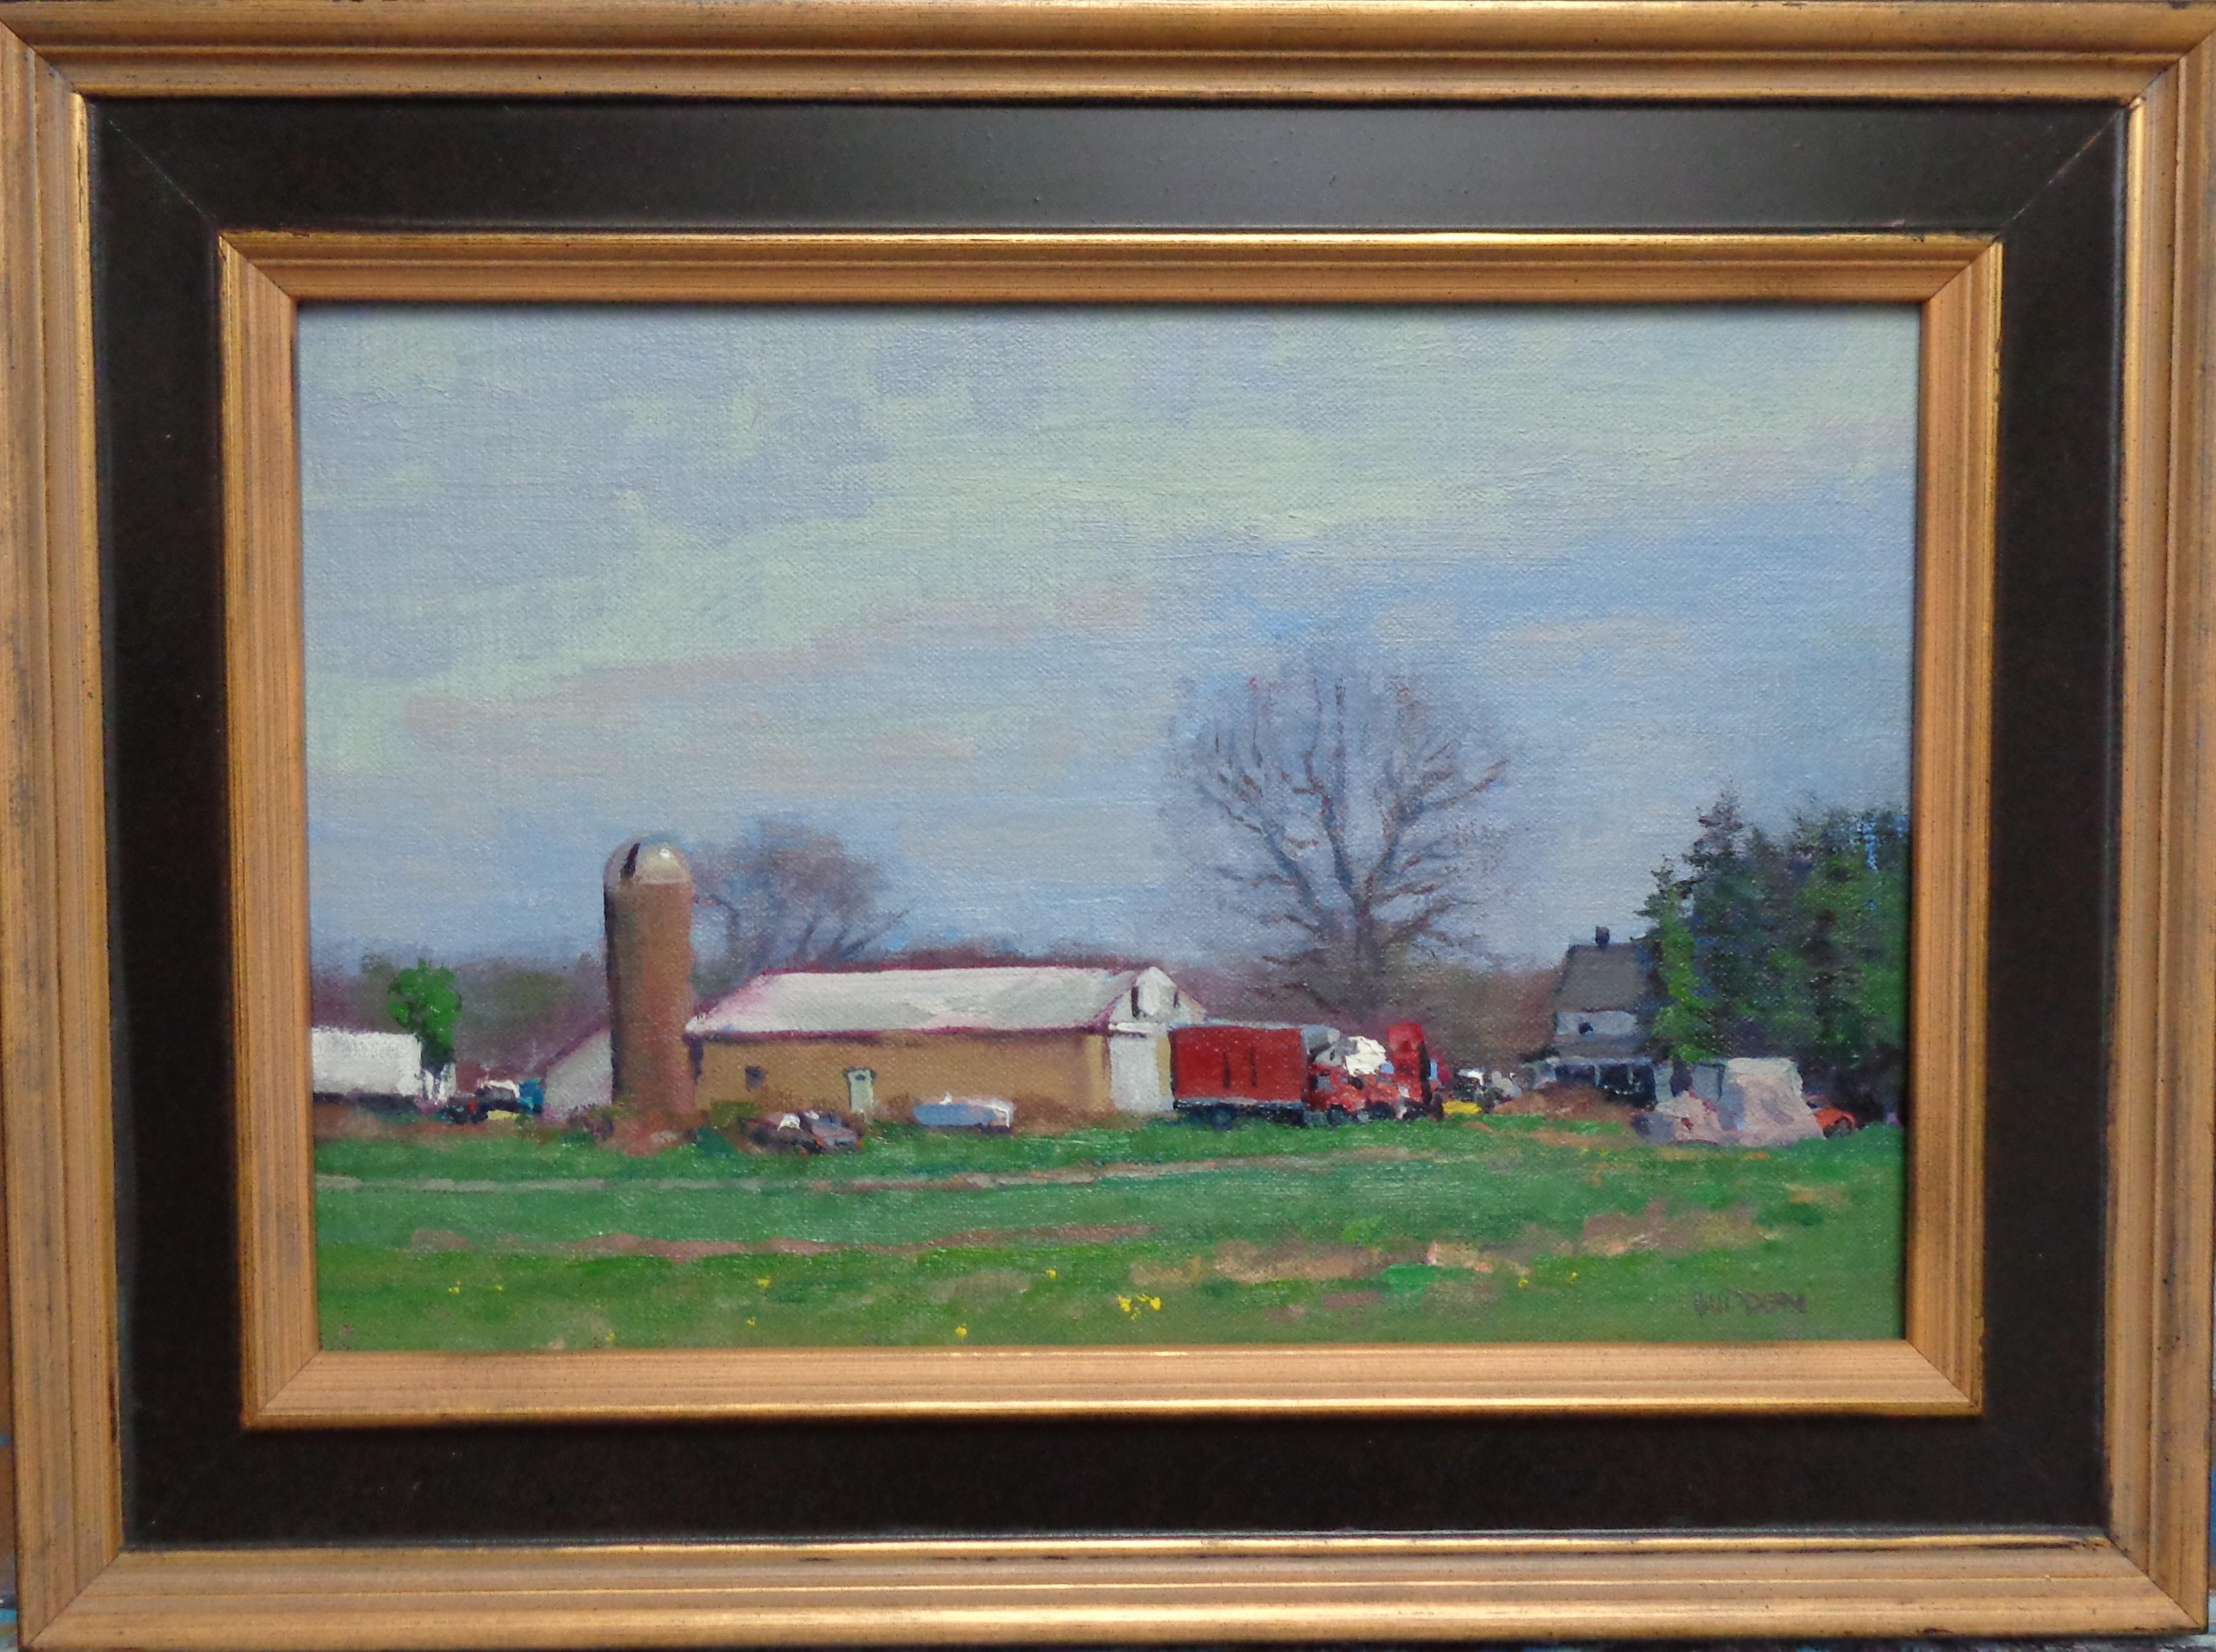 Scène de ferme est un paysage impressionniste peint à l'huile en plein air près de mon studio en 2020. La peinture est sur un panneau de toile et exsude les riches qualités de la peinture à l'huile avec des couleurs vives et fortes, une variété de